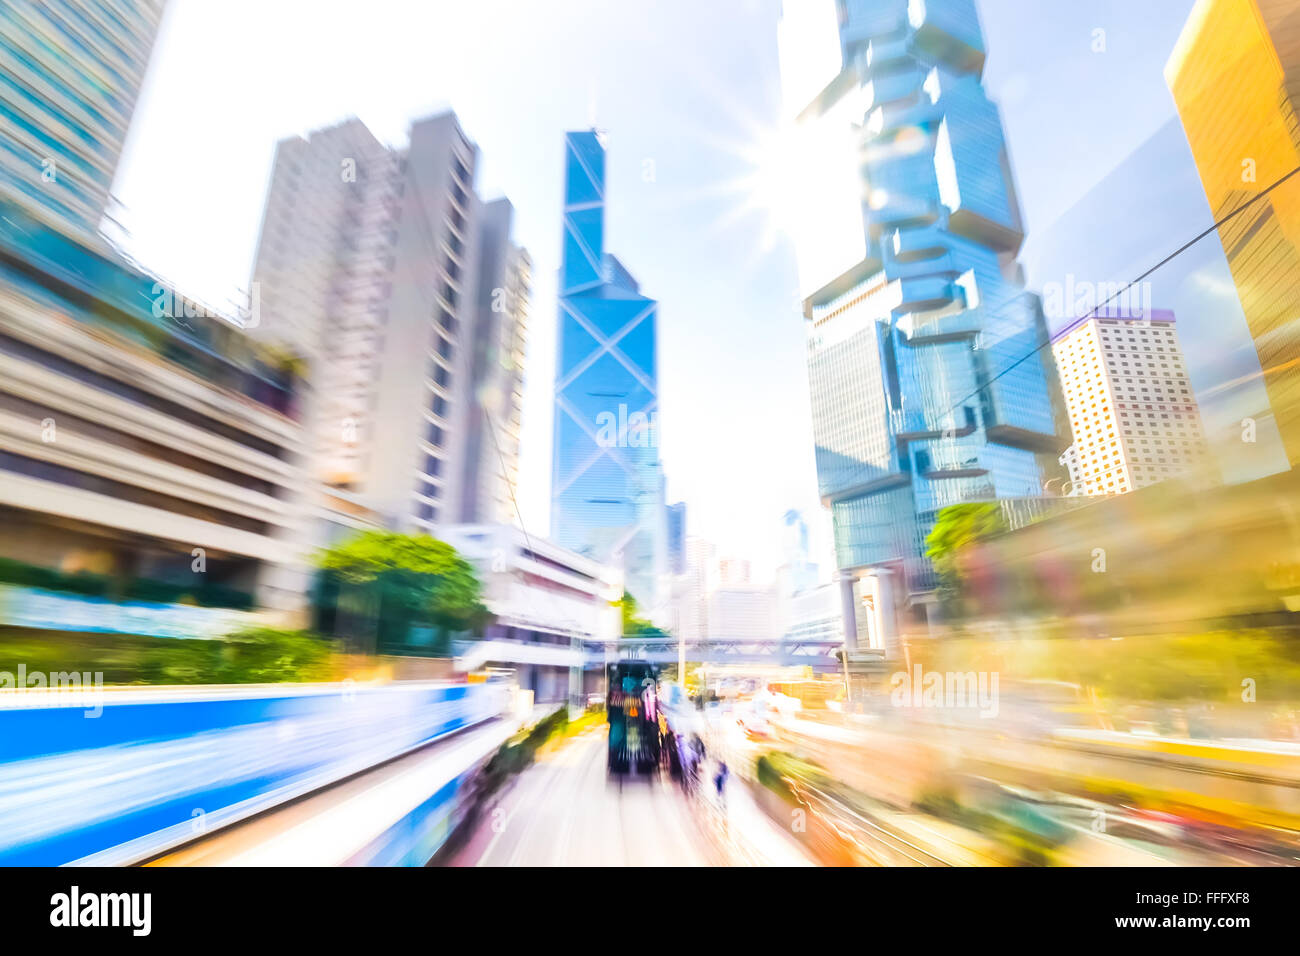 Bewegung durch abstrakte moderne Stadt mit Wolkenkratzern Straße. Hong Kong. Abstrakte Stadtbild Verkehr Hintergrund mit fahrenden Autos. Stockfoto